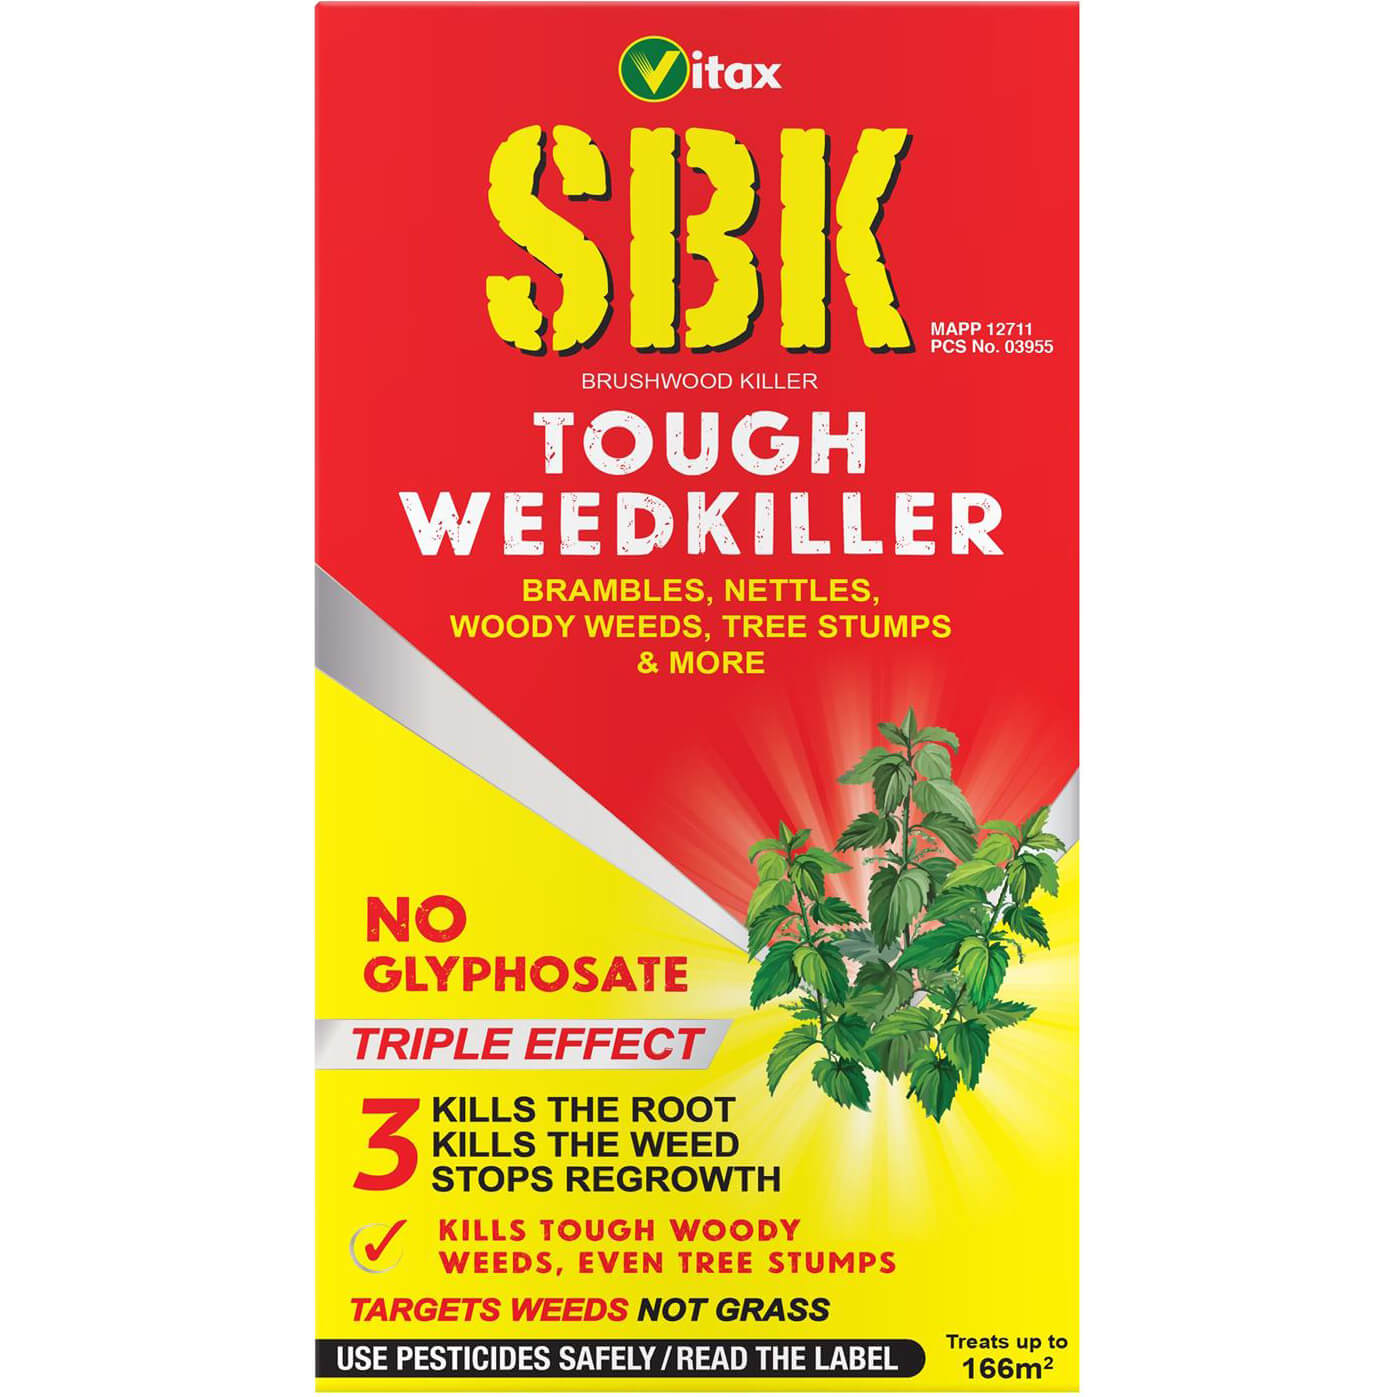 Photos - Pest Repellent VITAX SBK Brushwood Killer 500ml BK500 